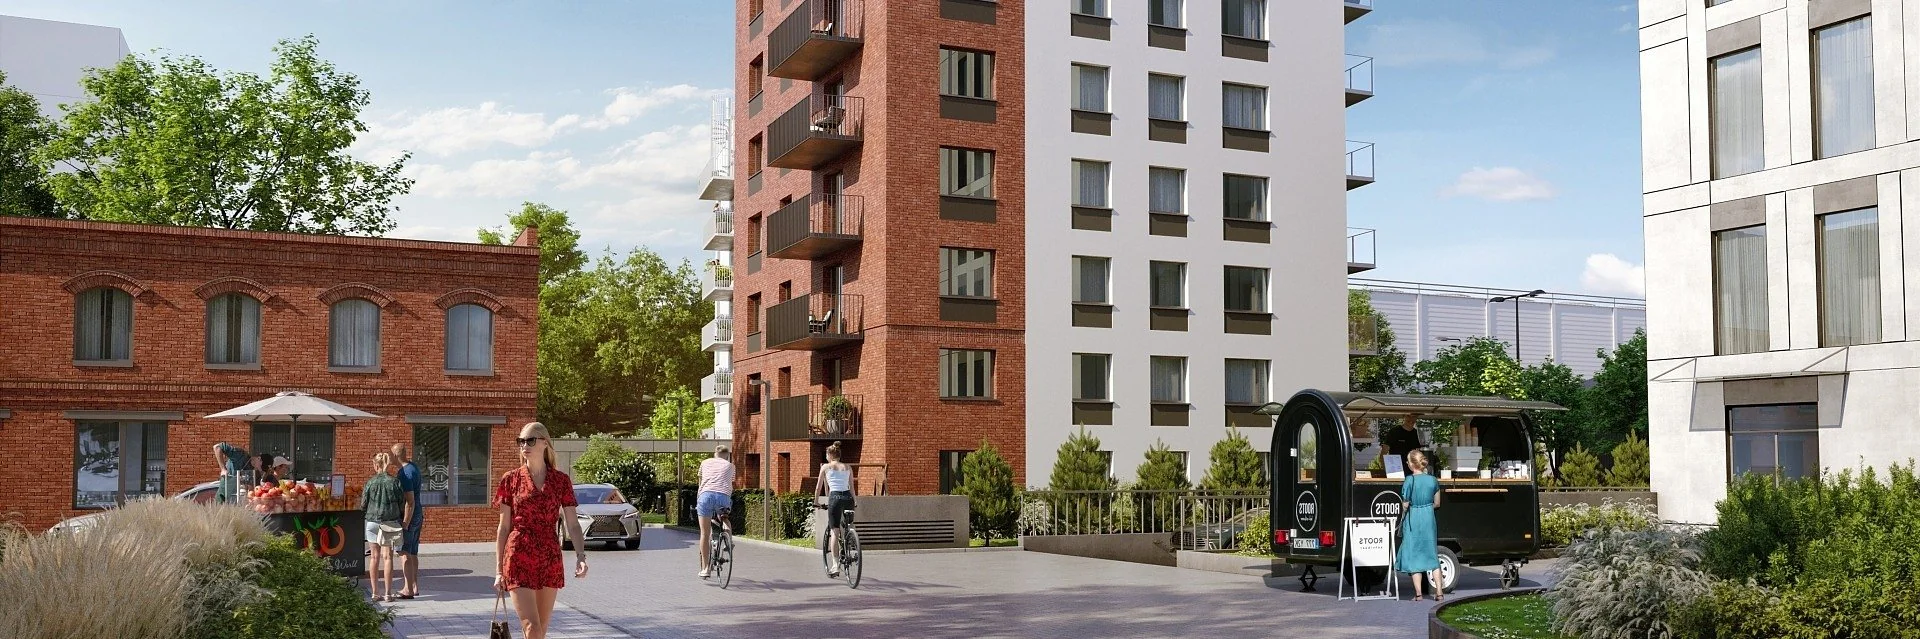 Apartamenty nad Oławką - nowa inwestycja Dom Development we Wrocławiu